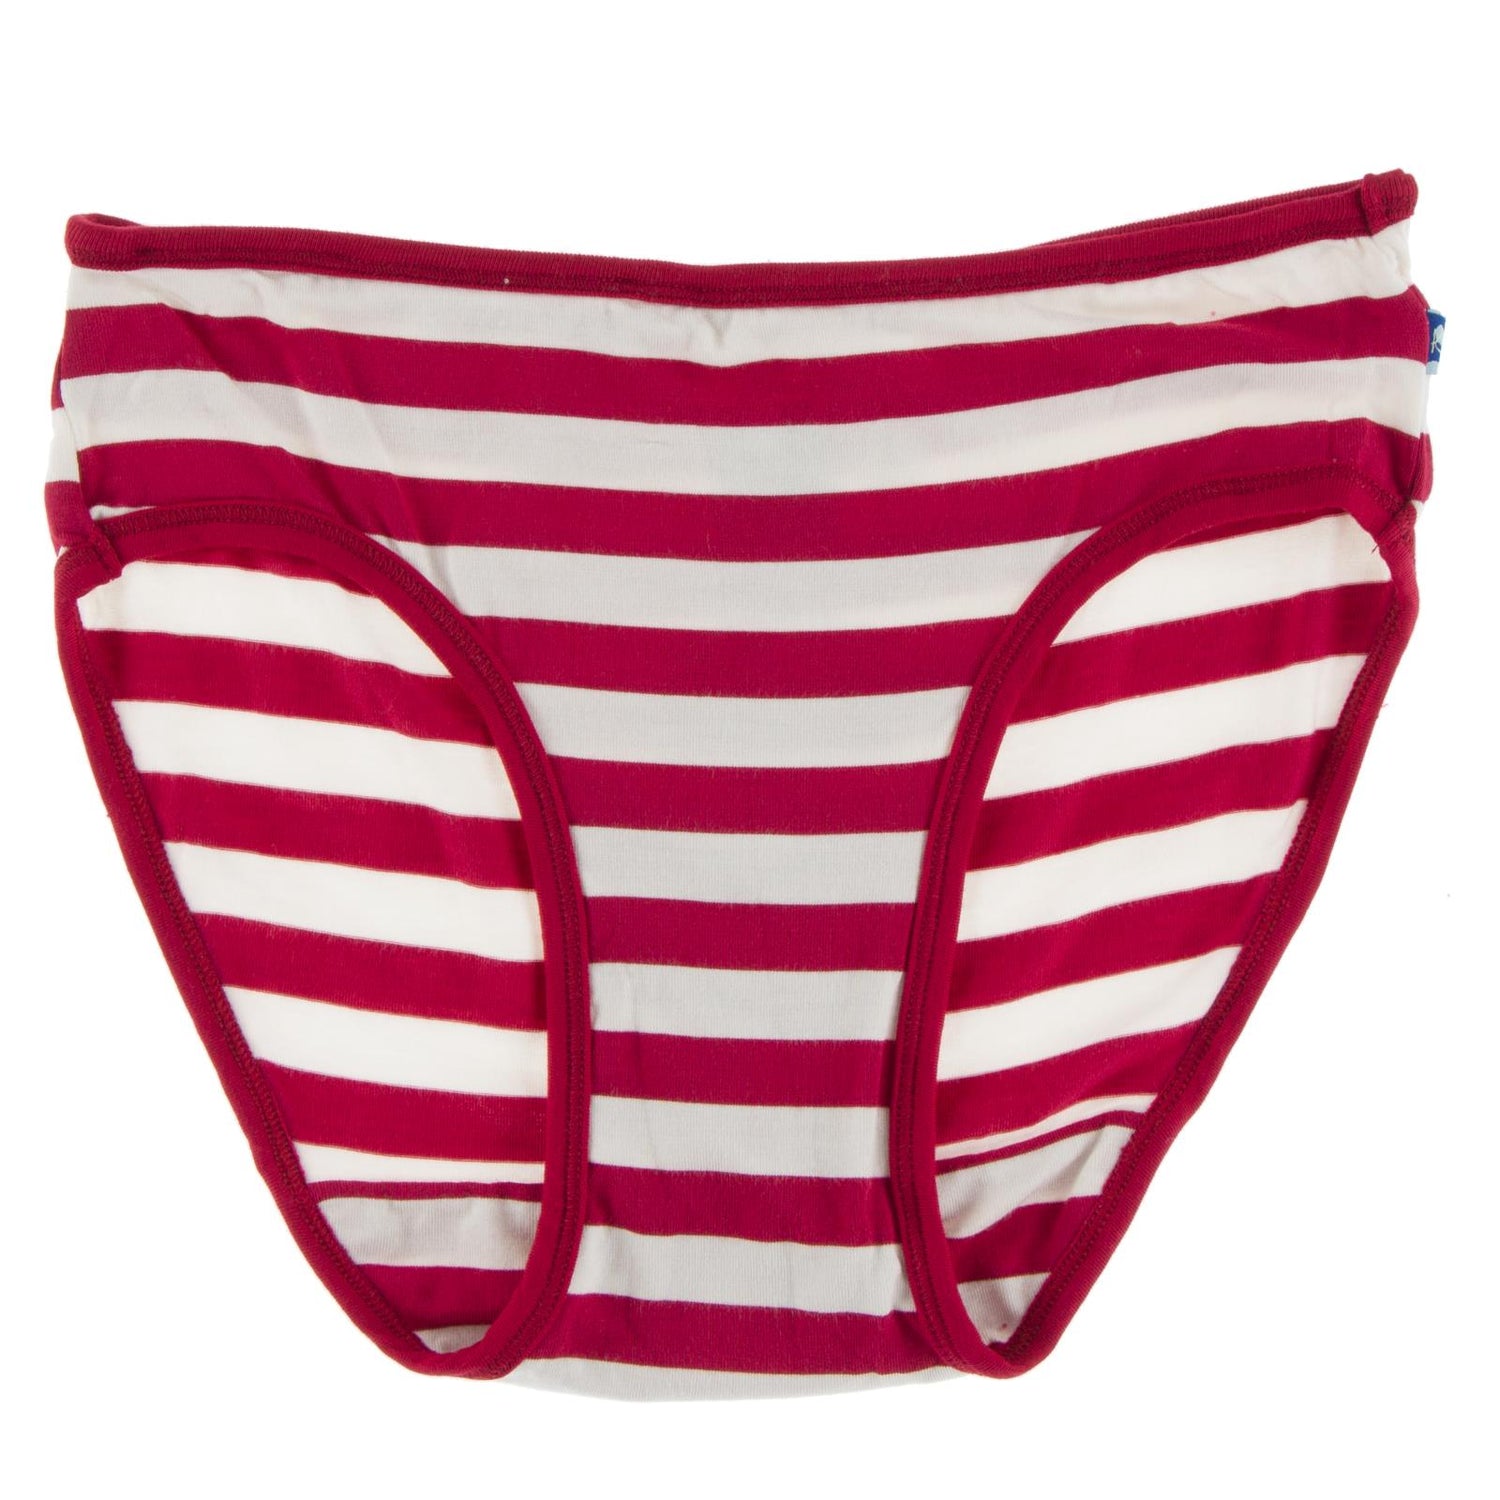 Print Underwear in Candy Cane Stripe 2019 with Crimson Trim